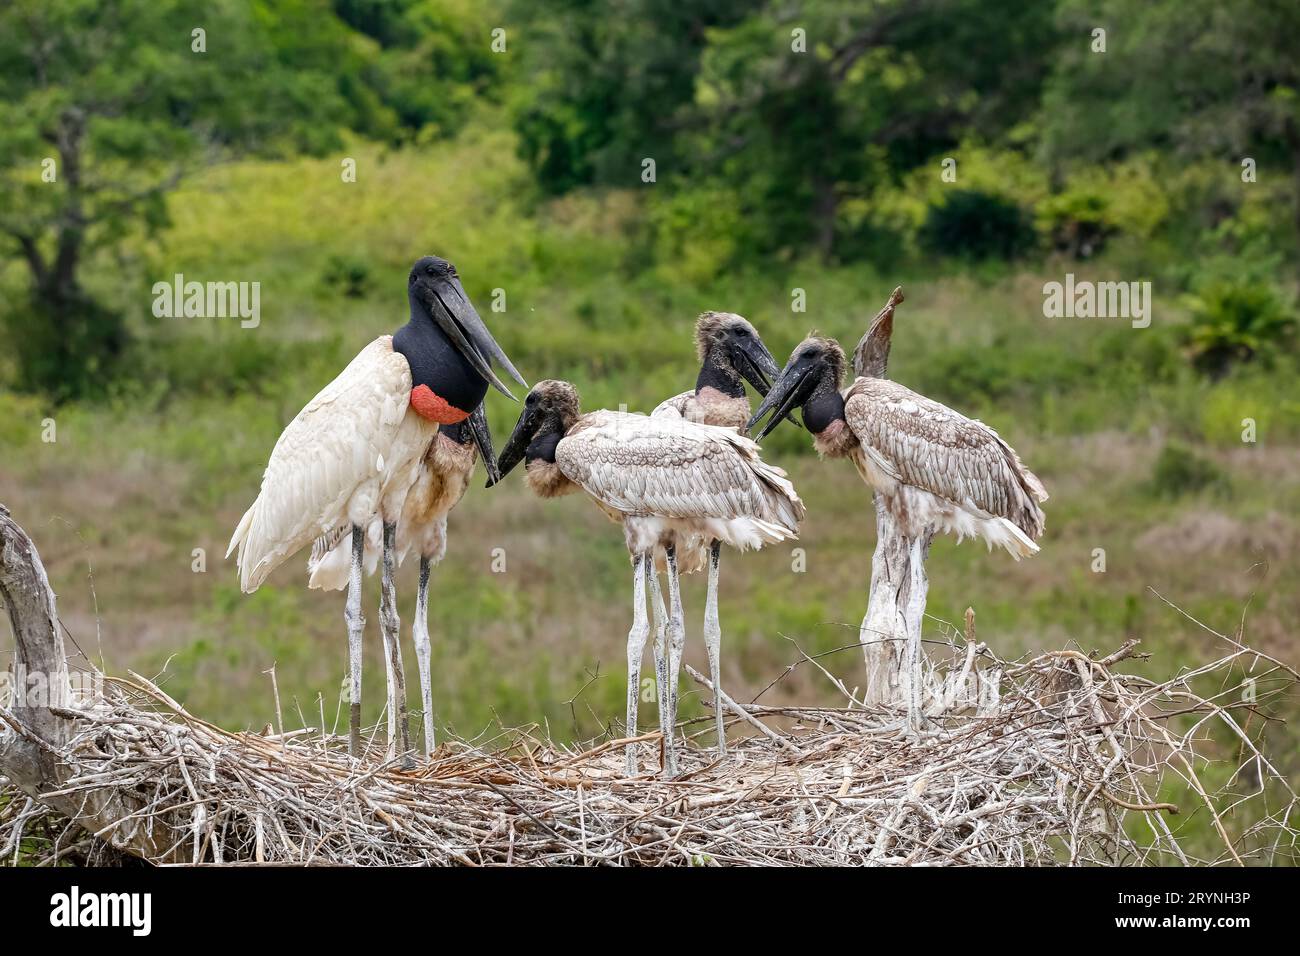 Nahaufnahme eines hohen Jabiru-Nestes mit vier jungen Jabirus, die auf die Fütterung durch einen Erwachsenen warten, gegen g Stockfoto